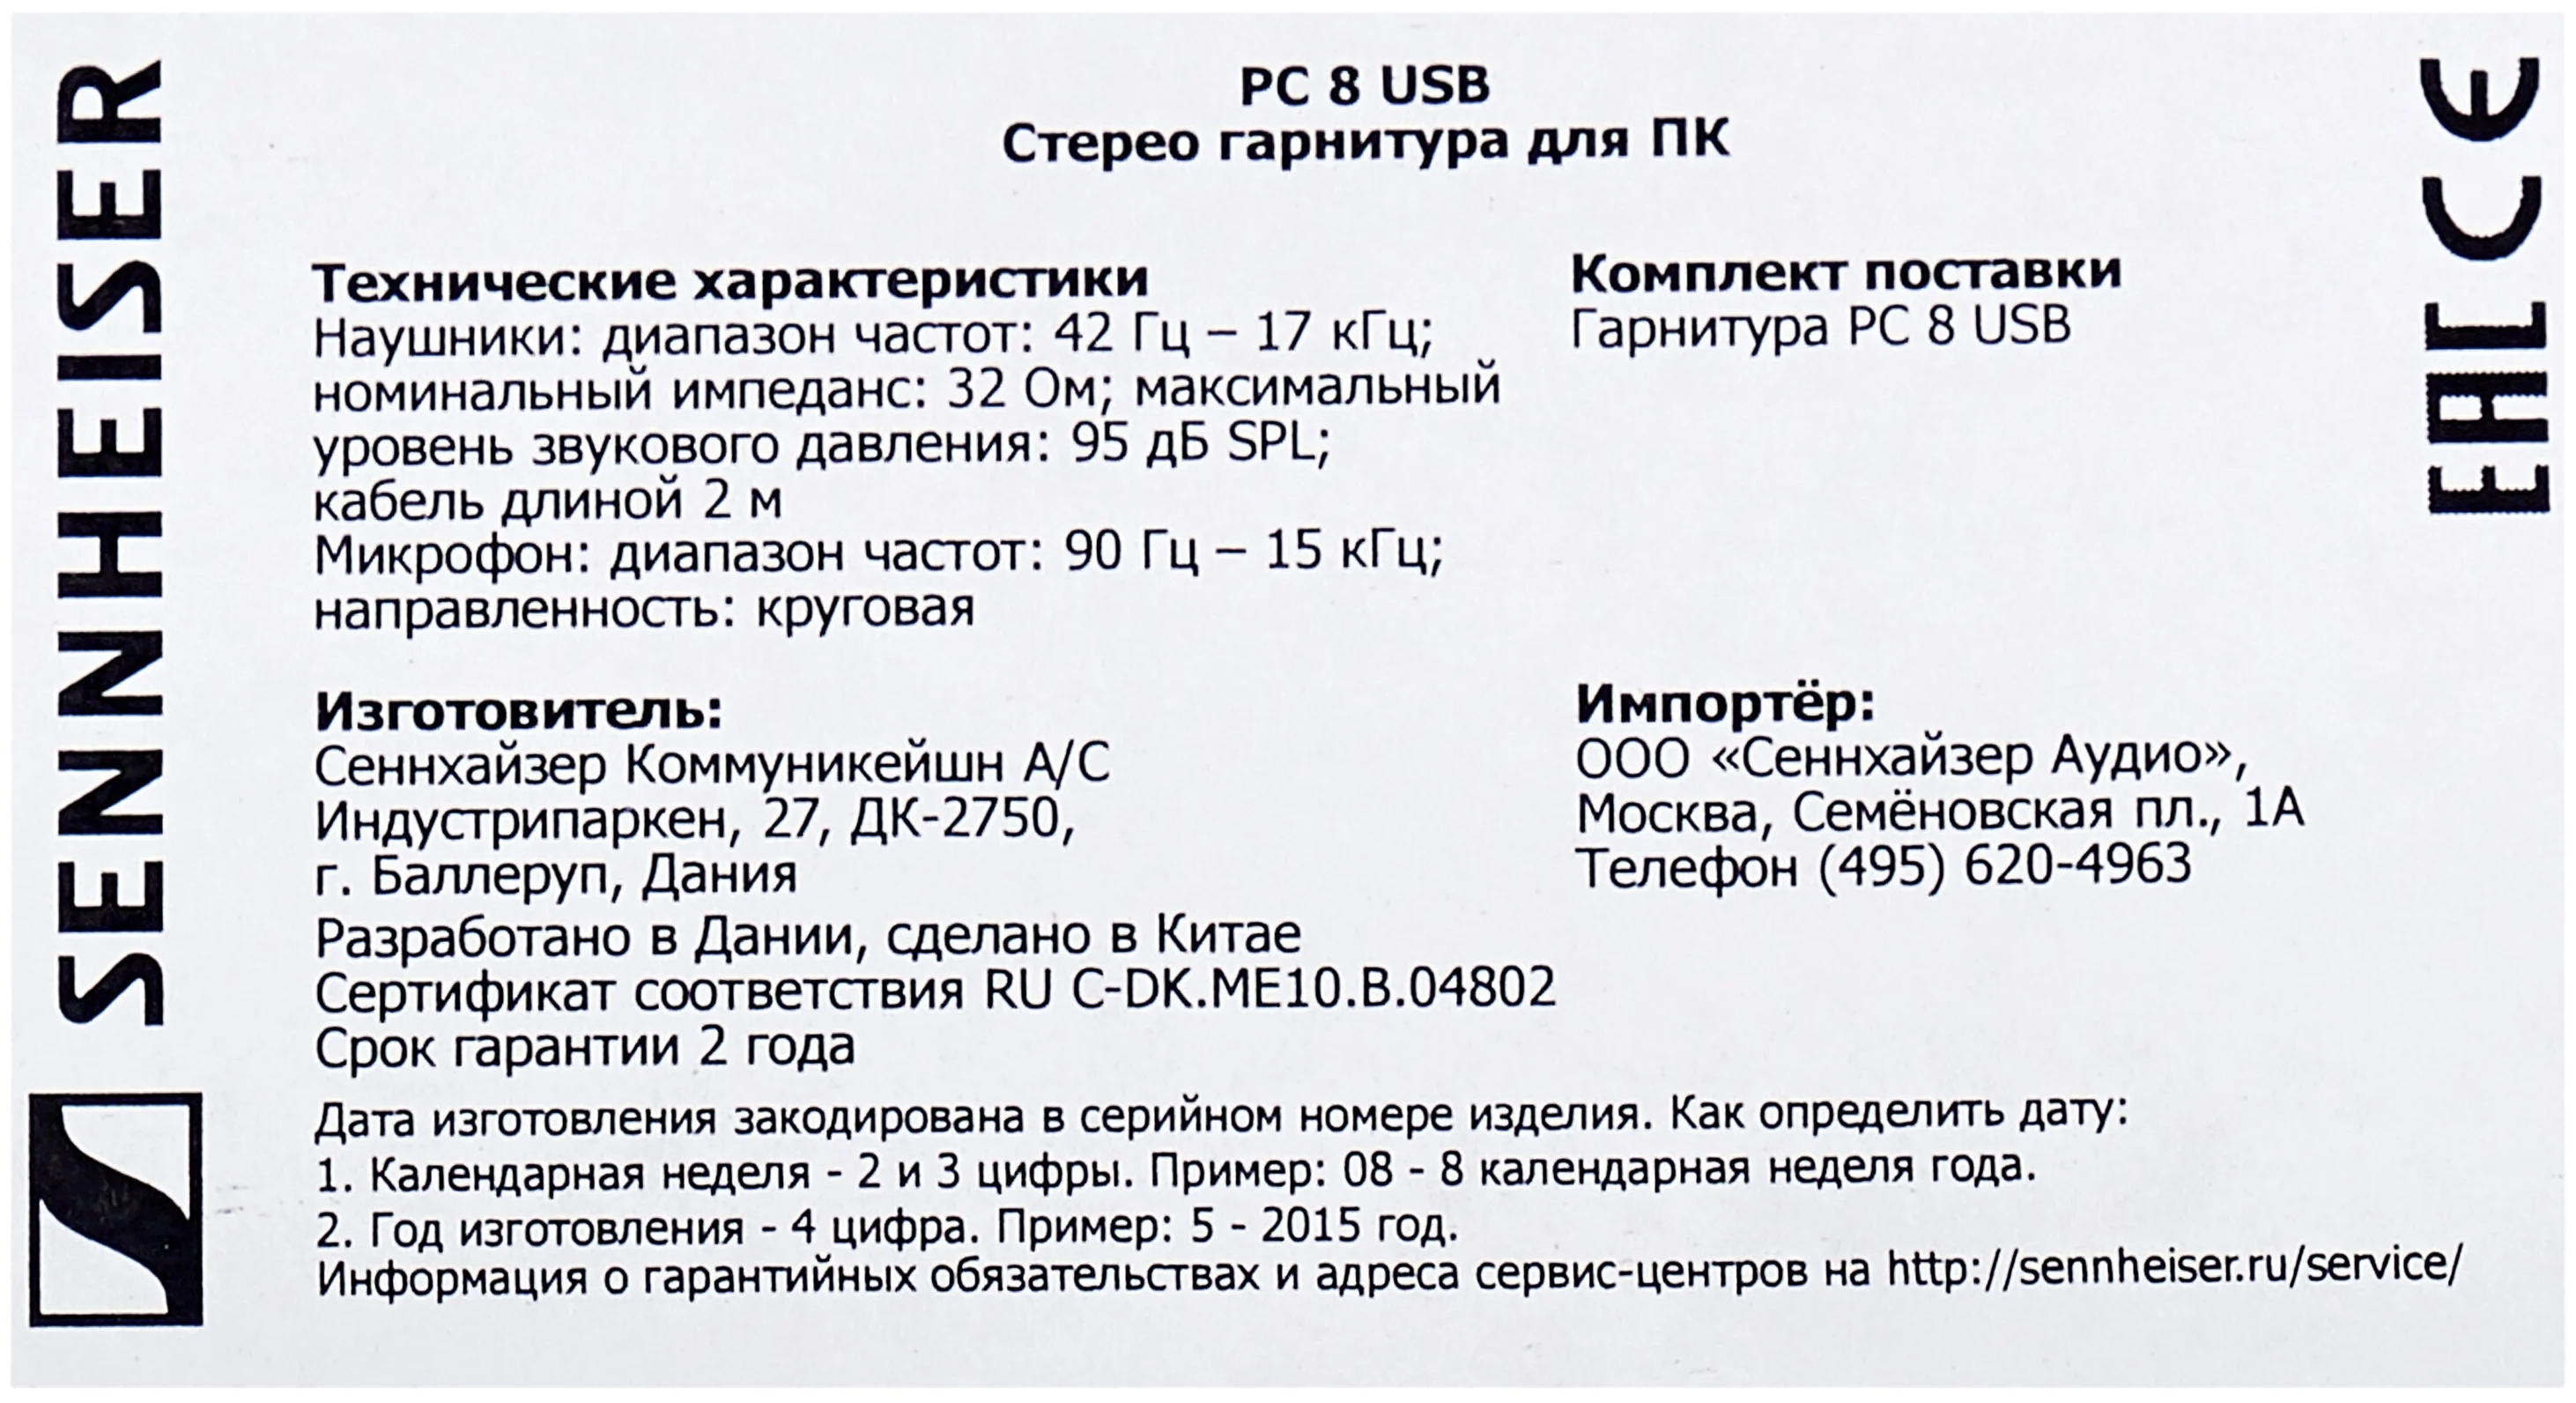 Sennheiser PC 8 USB - регуляторы: громкости, отключение микрофона